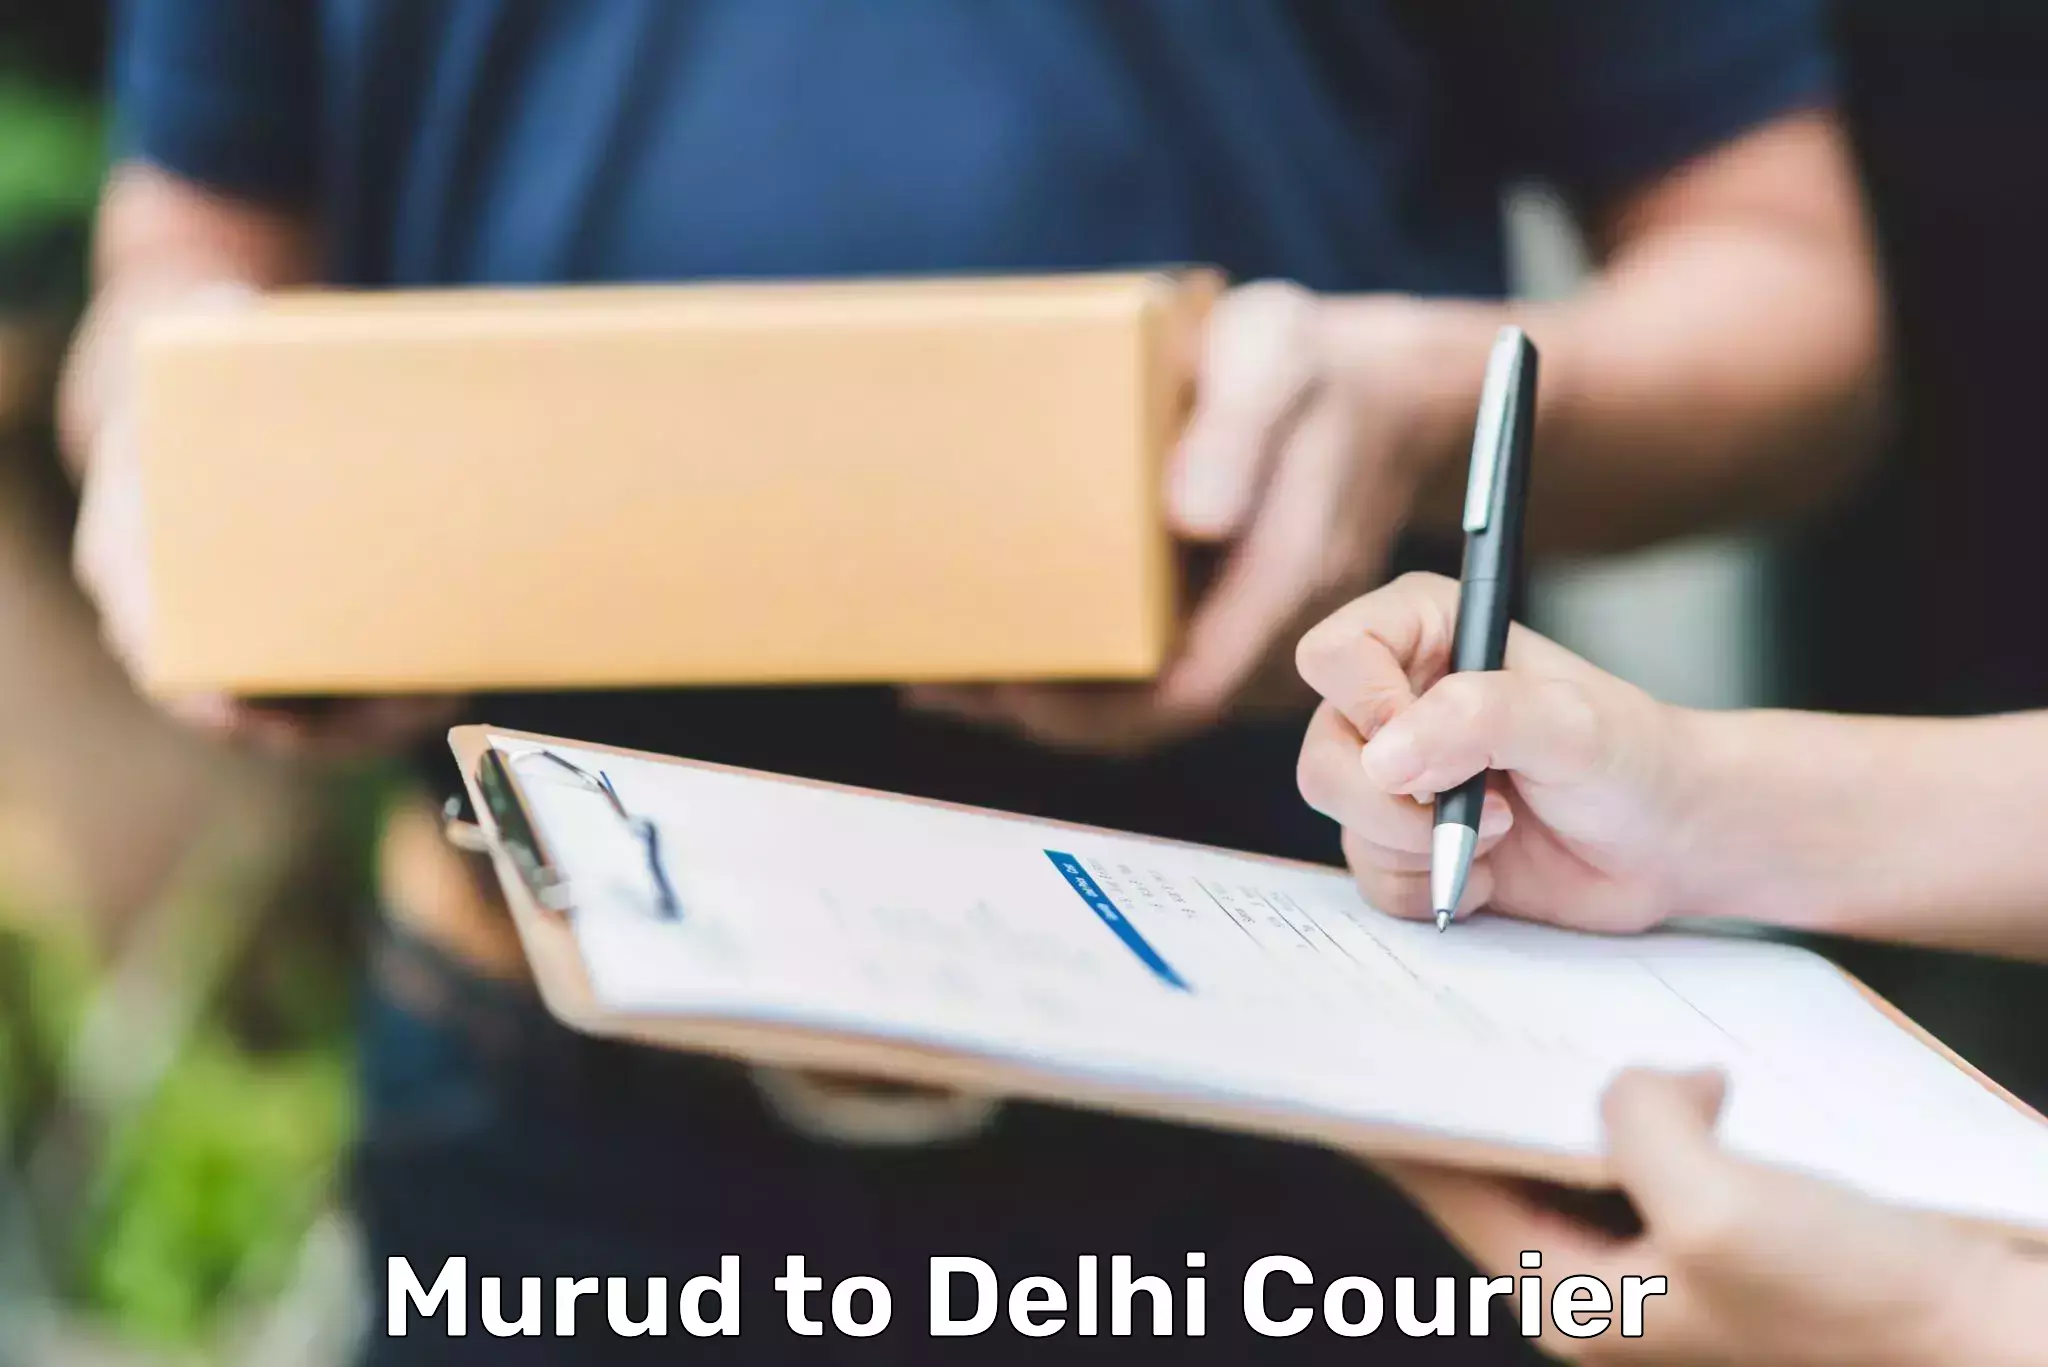 Overnight delivery services Murud to Delhi